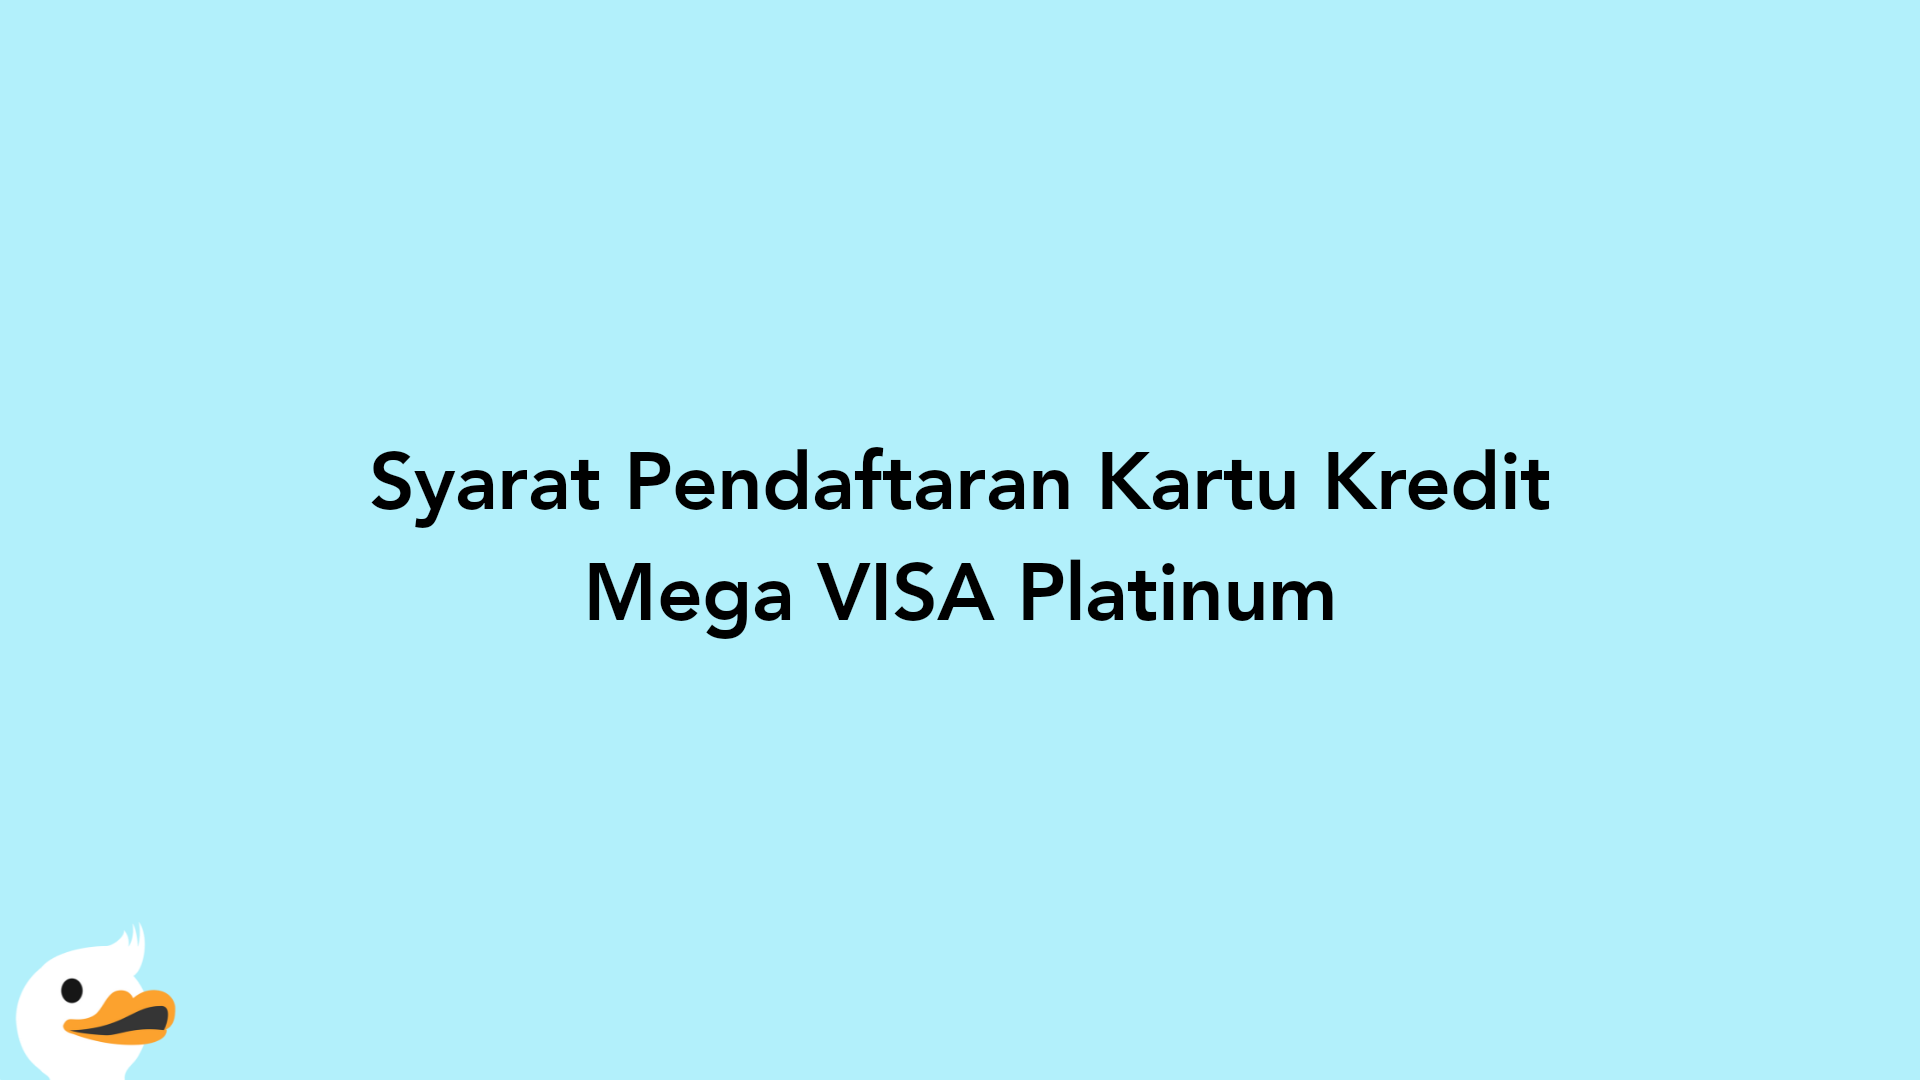 Syarat Pendaftaran Kartu Kredit Mega VISA Platinum